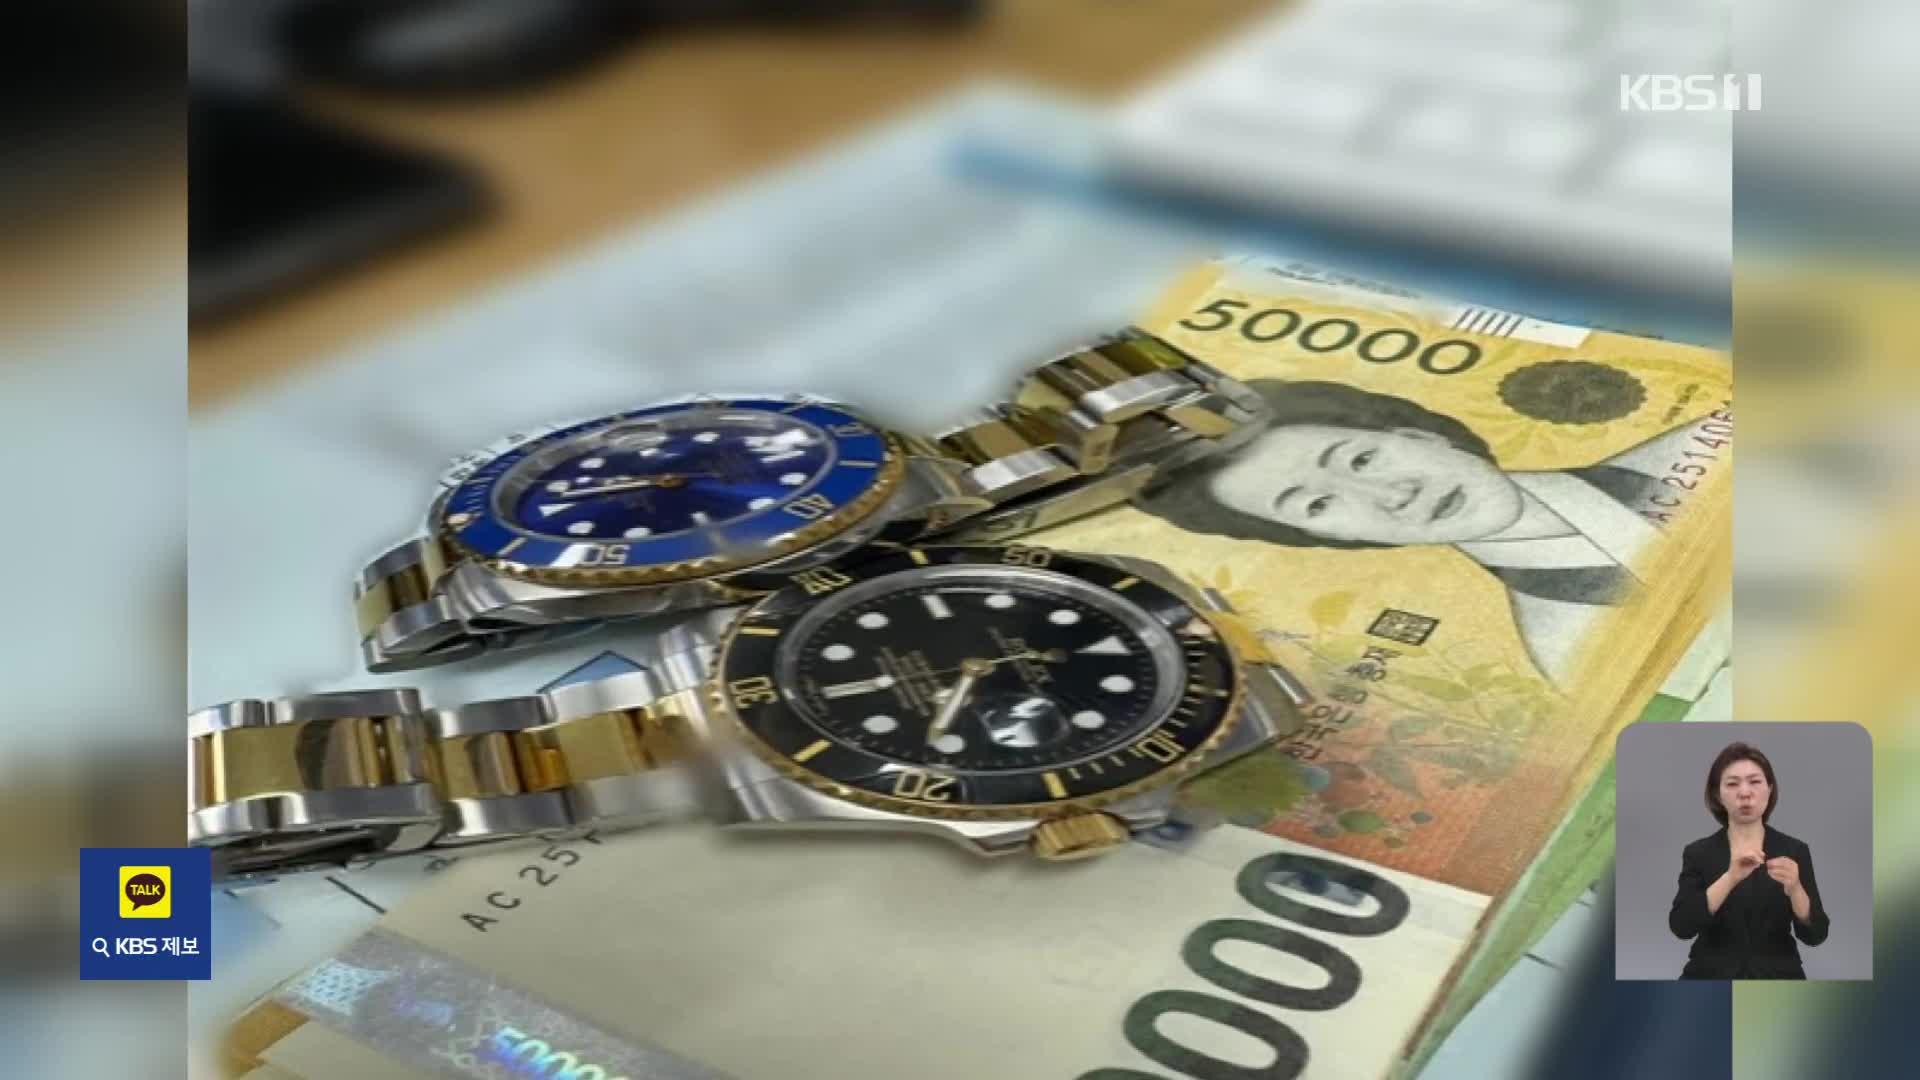 ‘명품 시계’ 구매대행이라더니…알고보니 7억대 보이스피싱 돈세탁